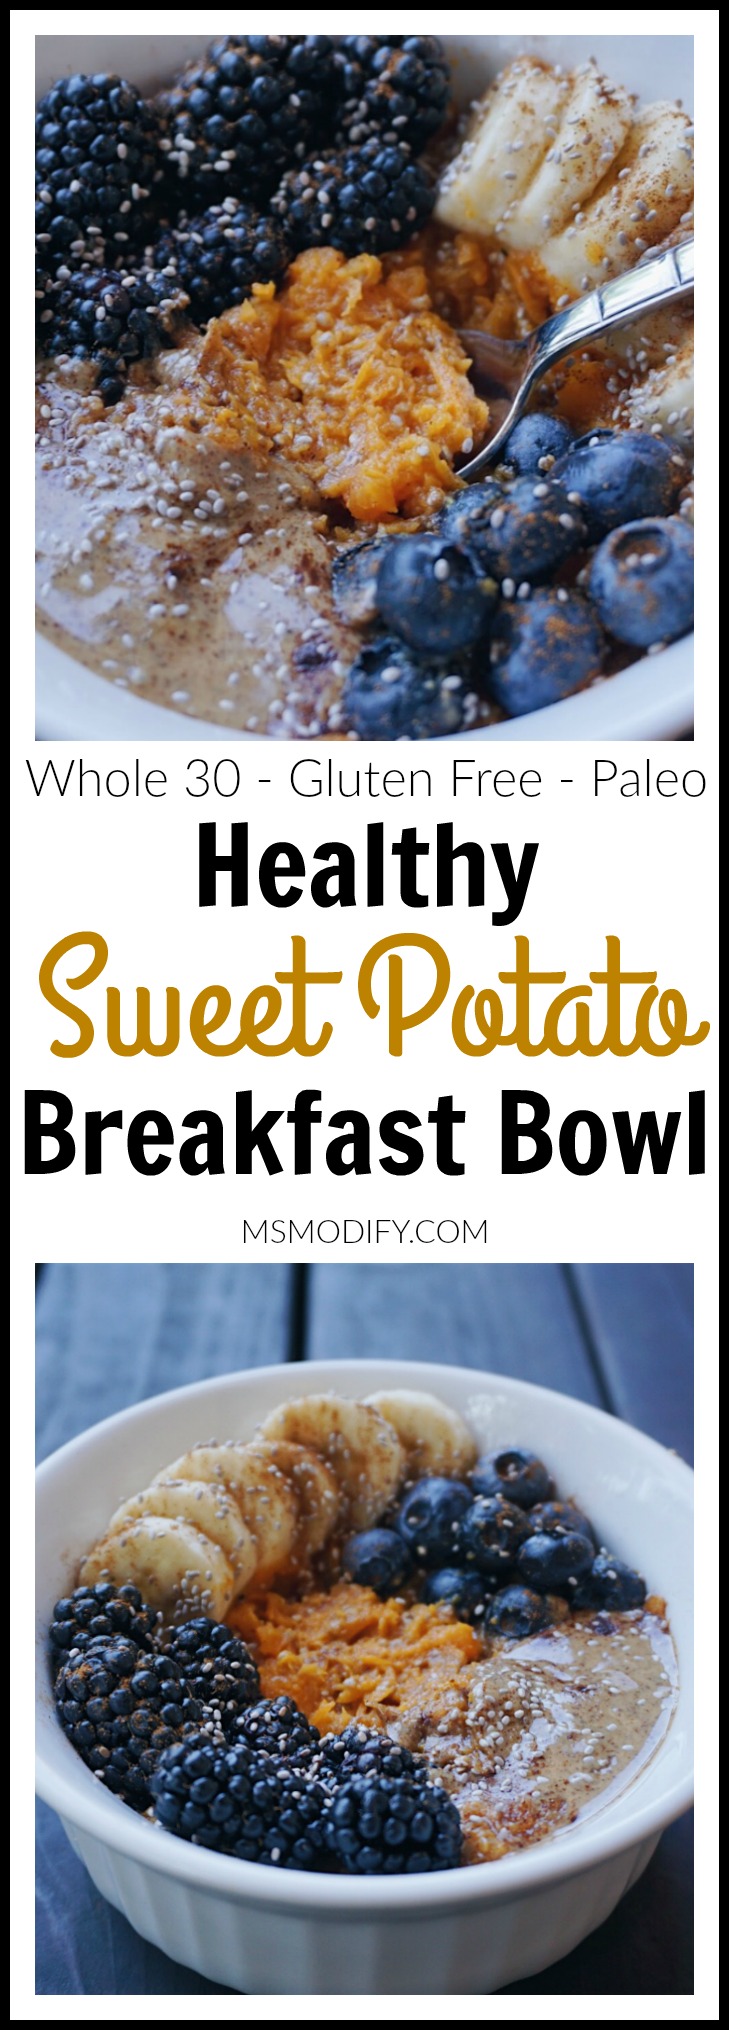 Sweet Potato Breakfast Bowl